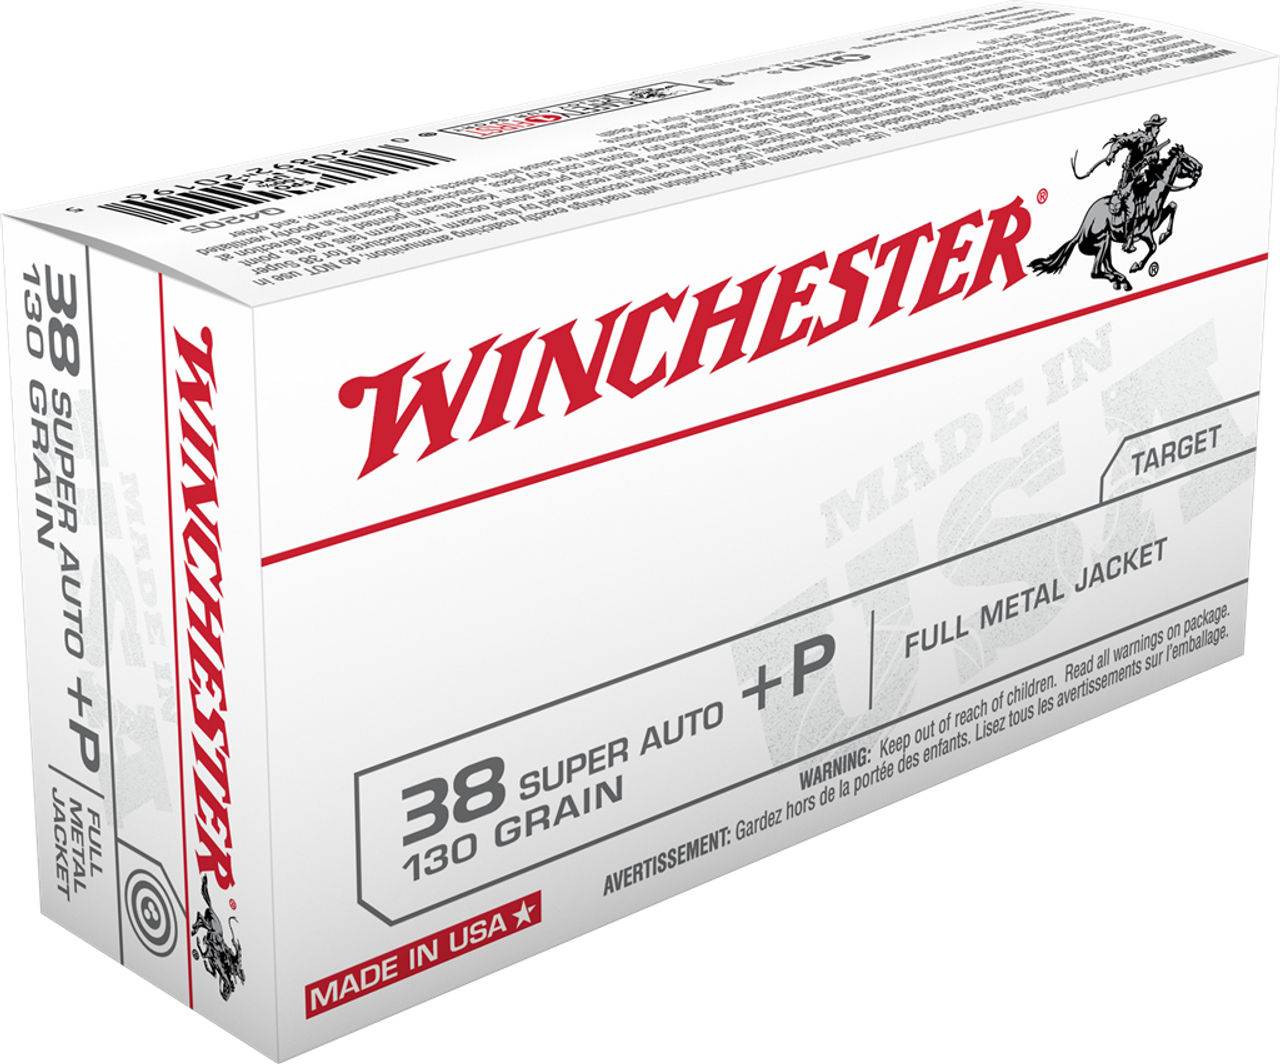 Winchester 38 Super Auto +P, 130 Gr FMJ, 50 Rnds